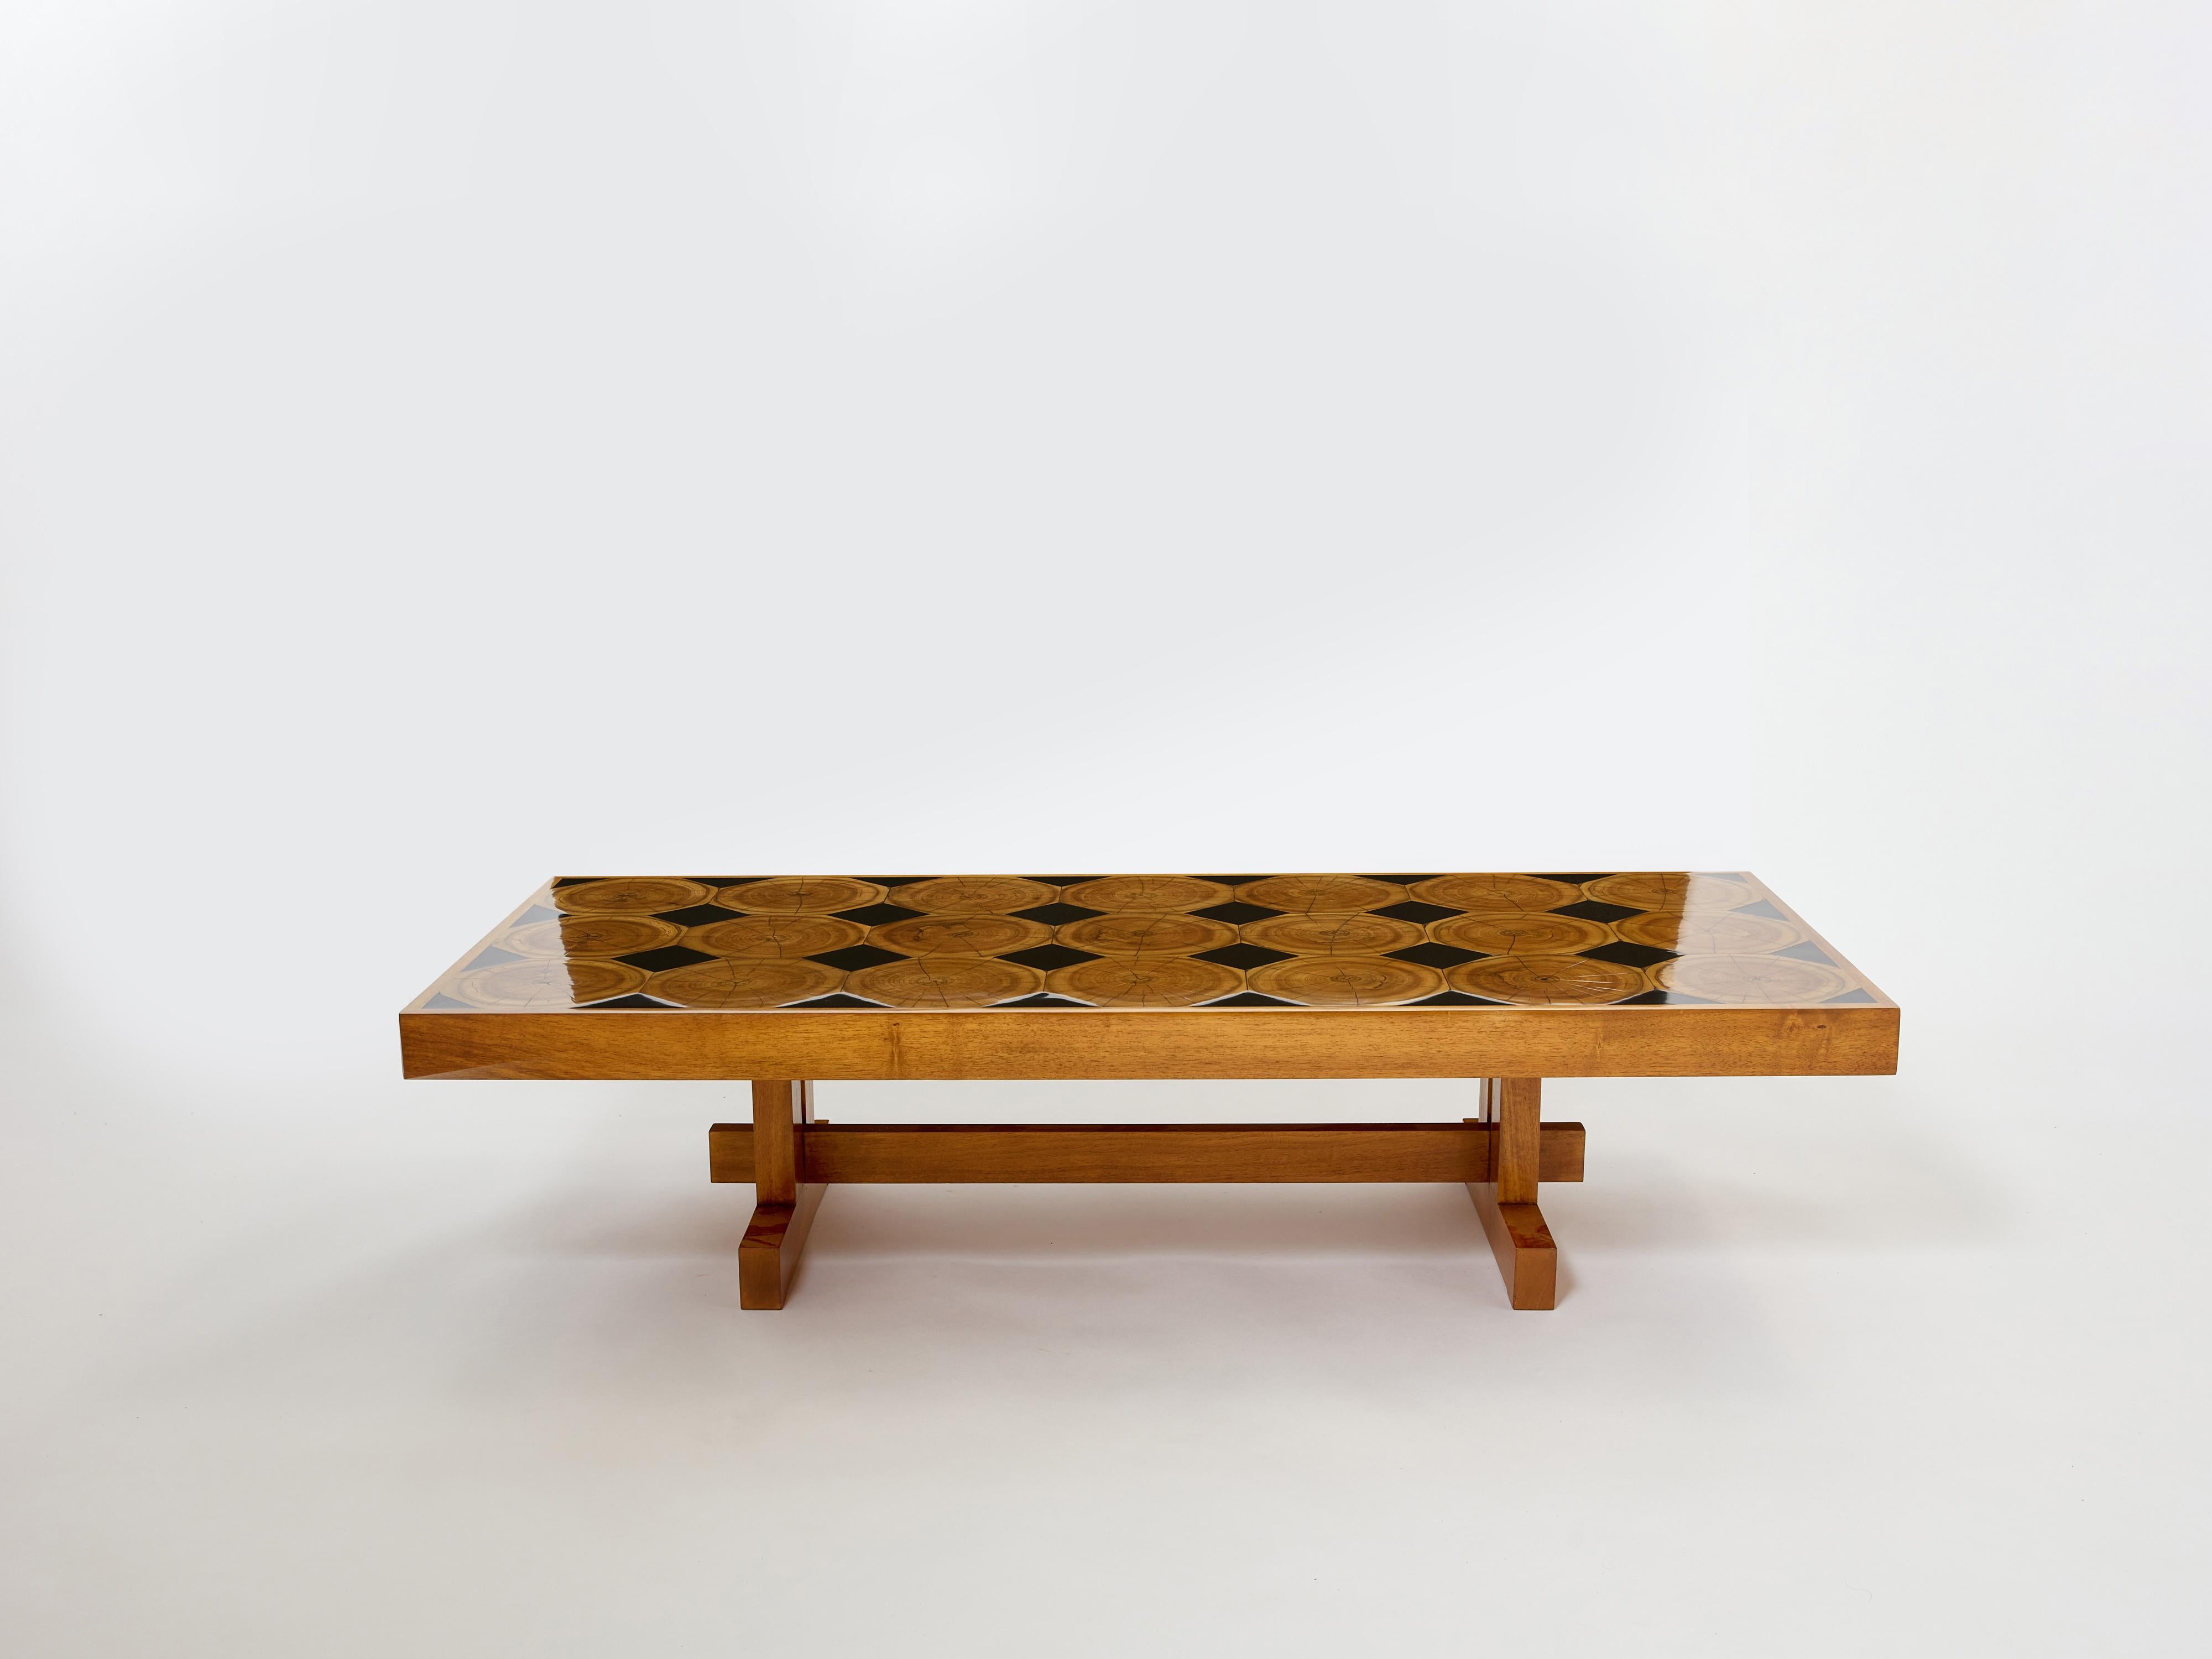 Cette grande table basse française moderniste en bois de chêne massif est sûre d'ajouter un élément de brutalisme français à n'importe quel salon. Il a été conçu et produit en France par un ébéniste inconnu dans les années 1960. Il se compose d'un